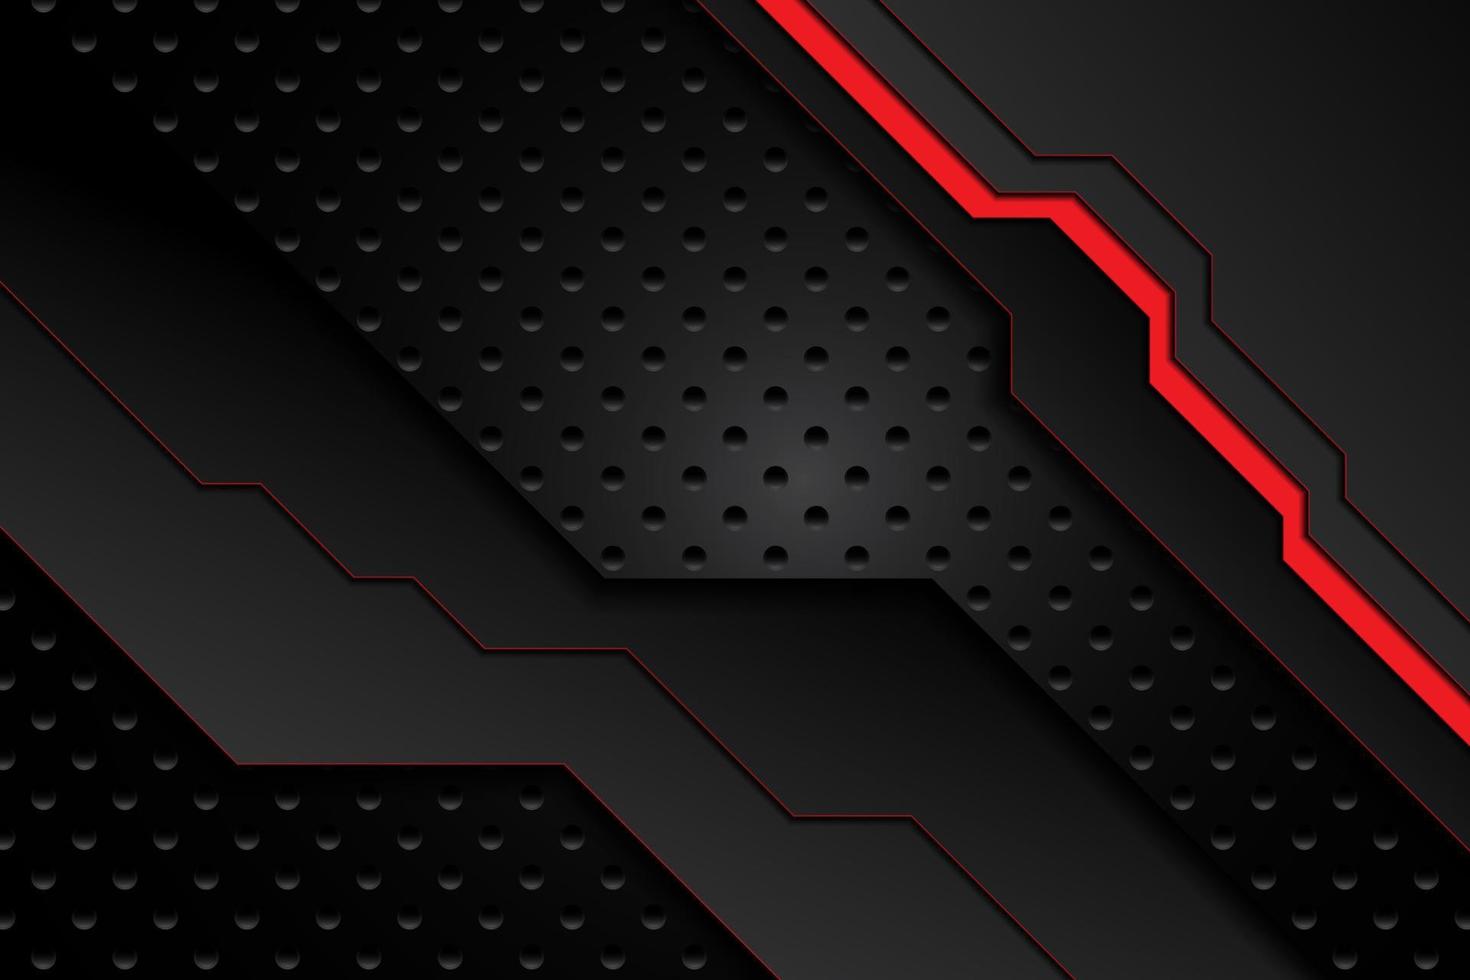 plaque de métal rayures noires et rouges contrastées sur maille d'acier. arrière-plan de conception de technologie moderne de modèle. illustration vectorielle vecteur